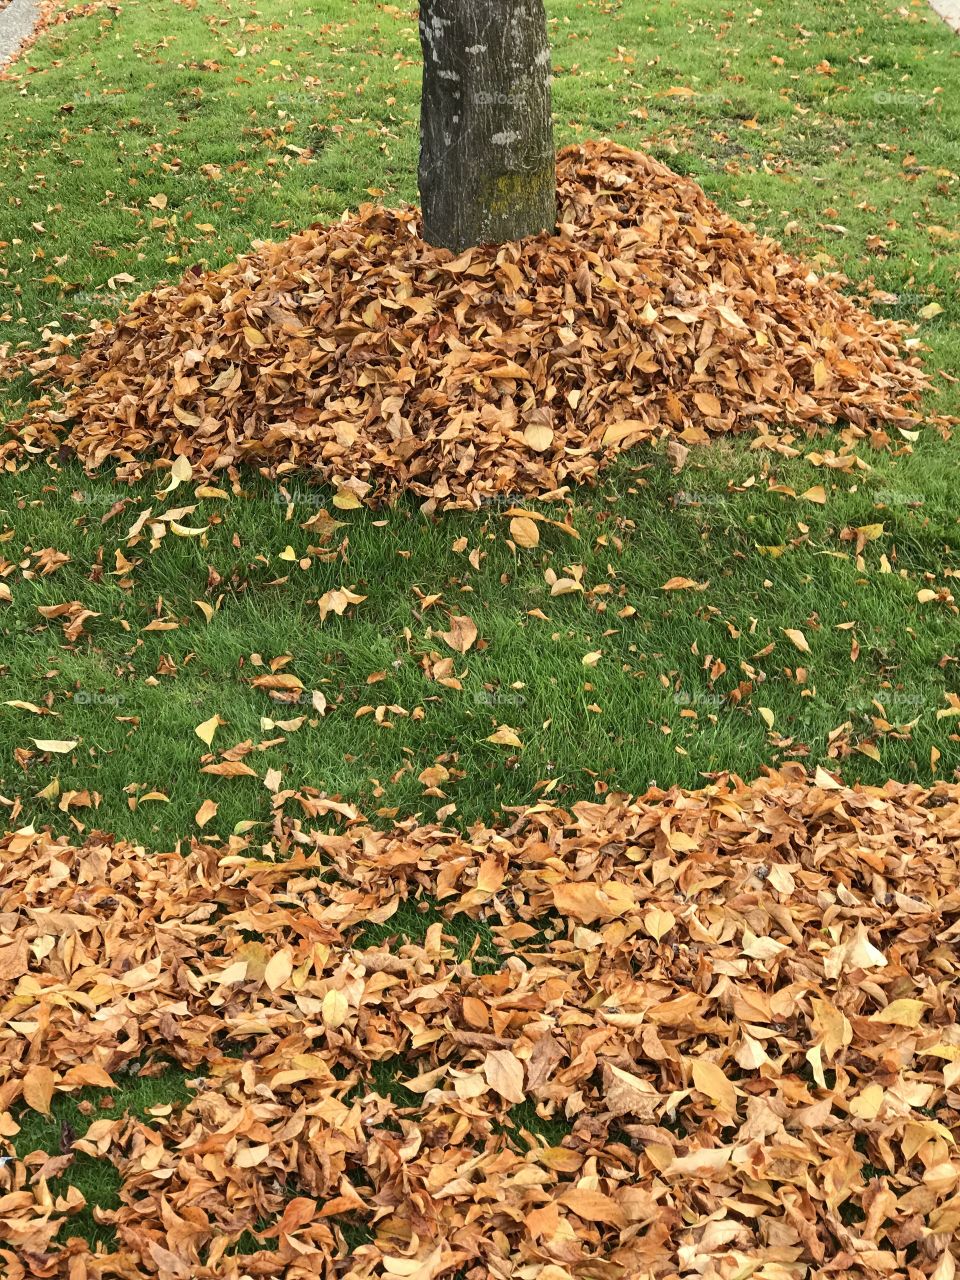 Raking golden leaves